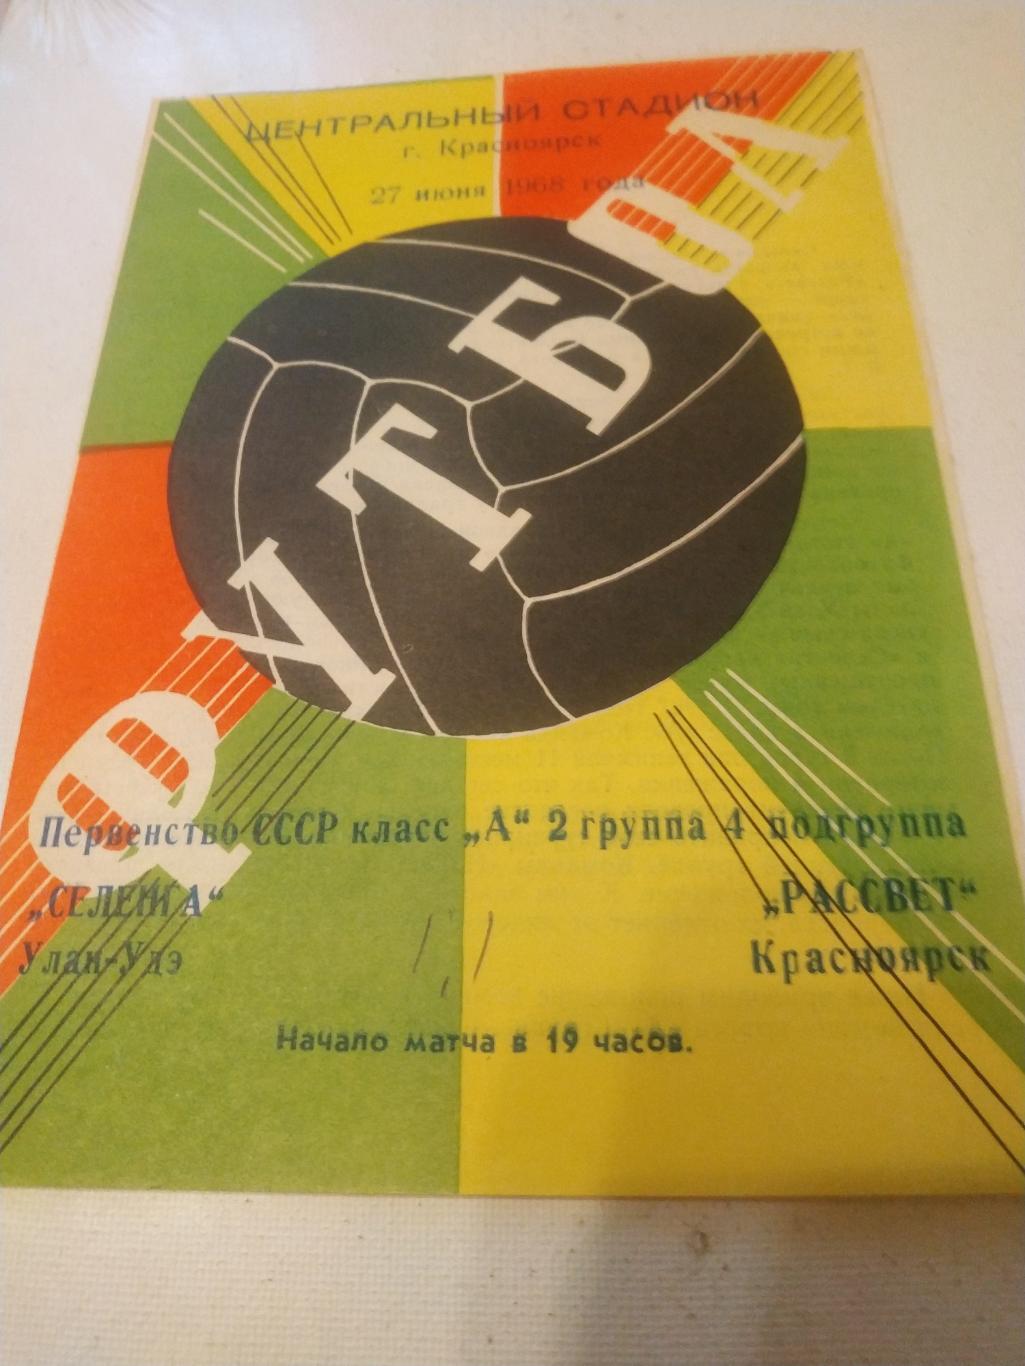 Рассвет Красноярск - Селенга Улан-Удэ 1968